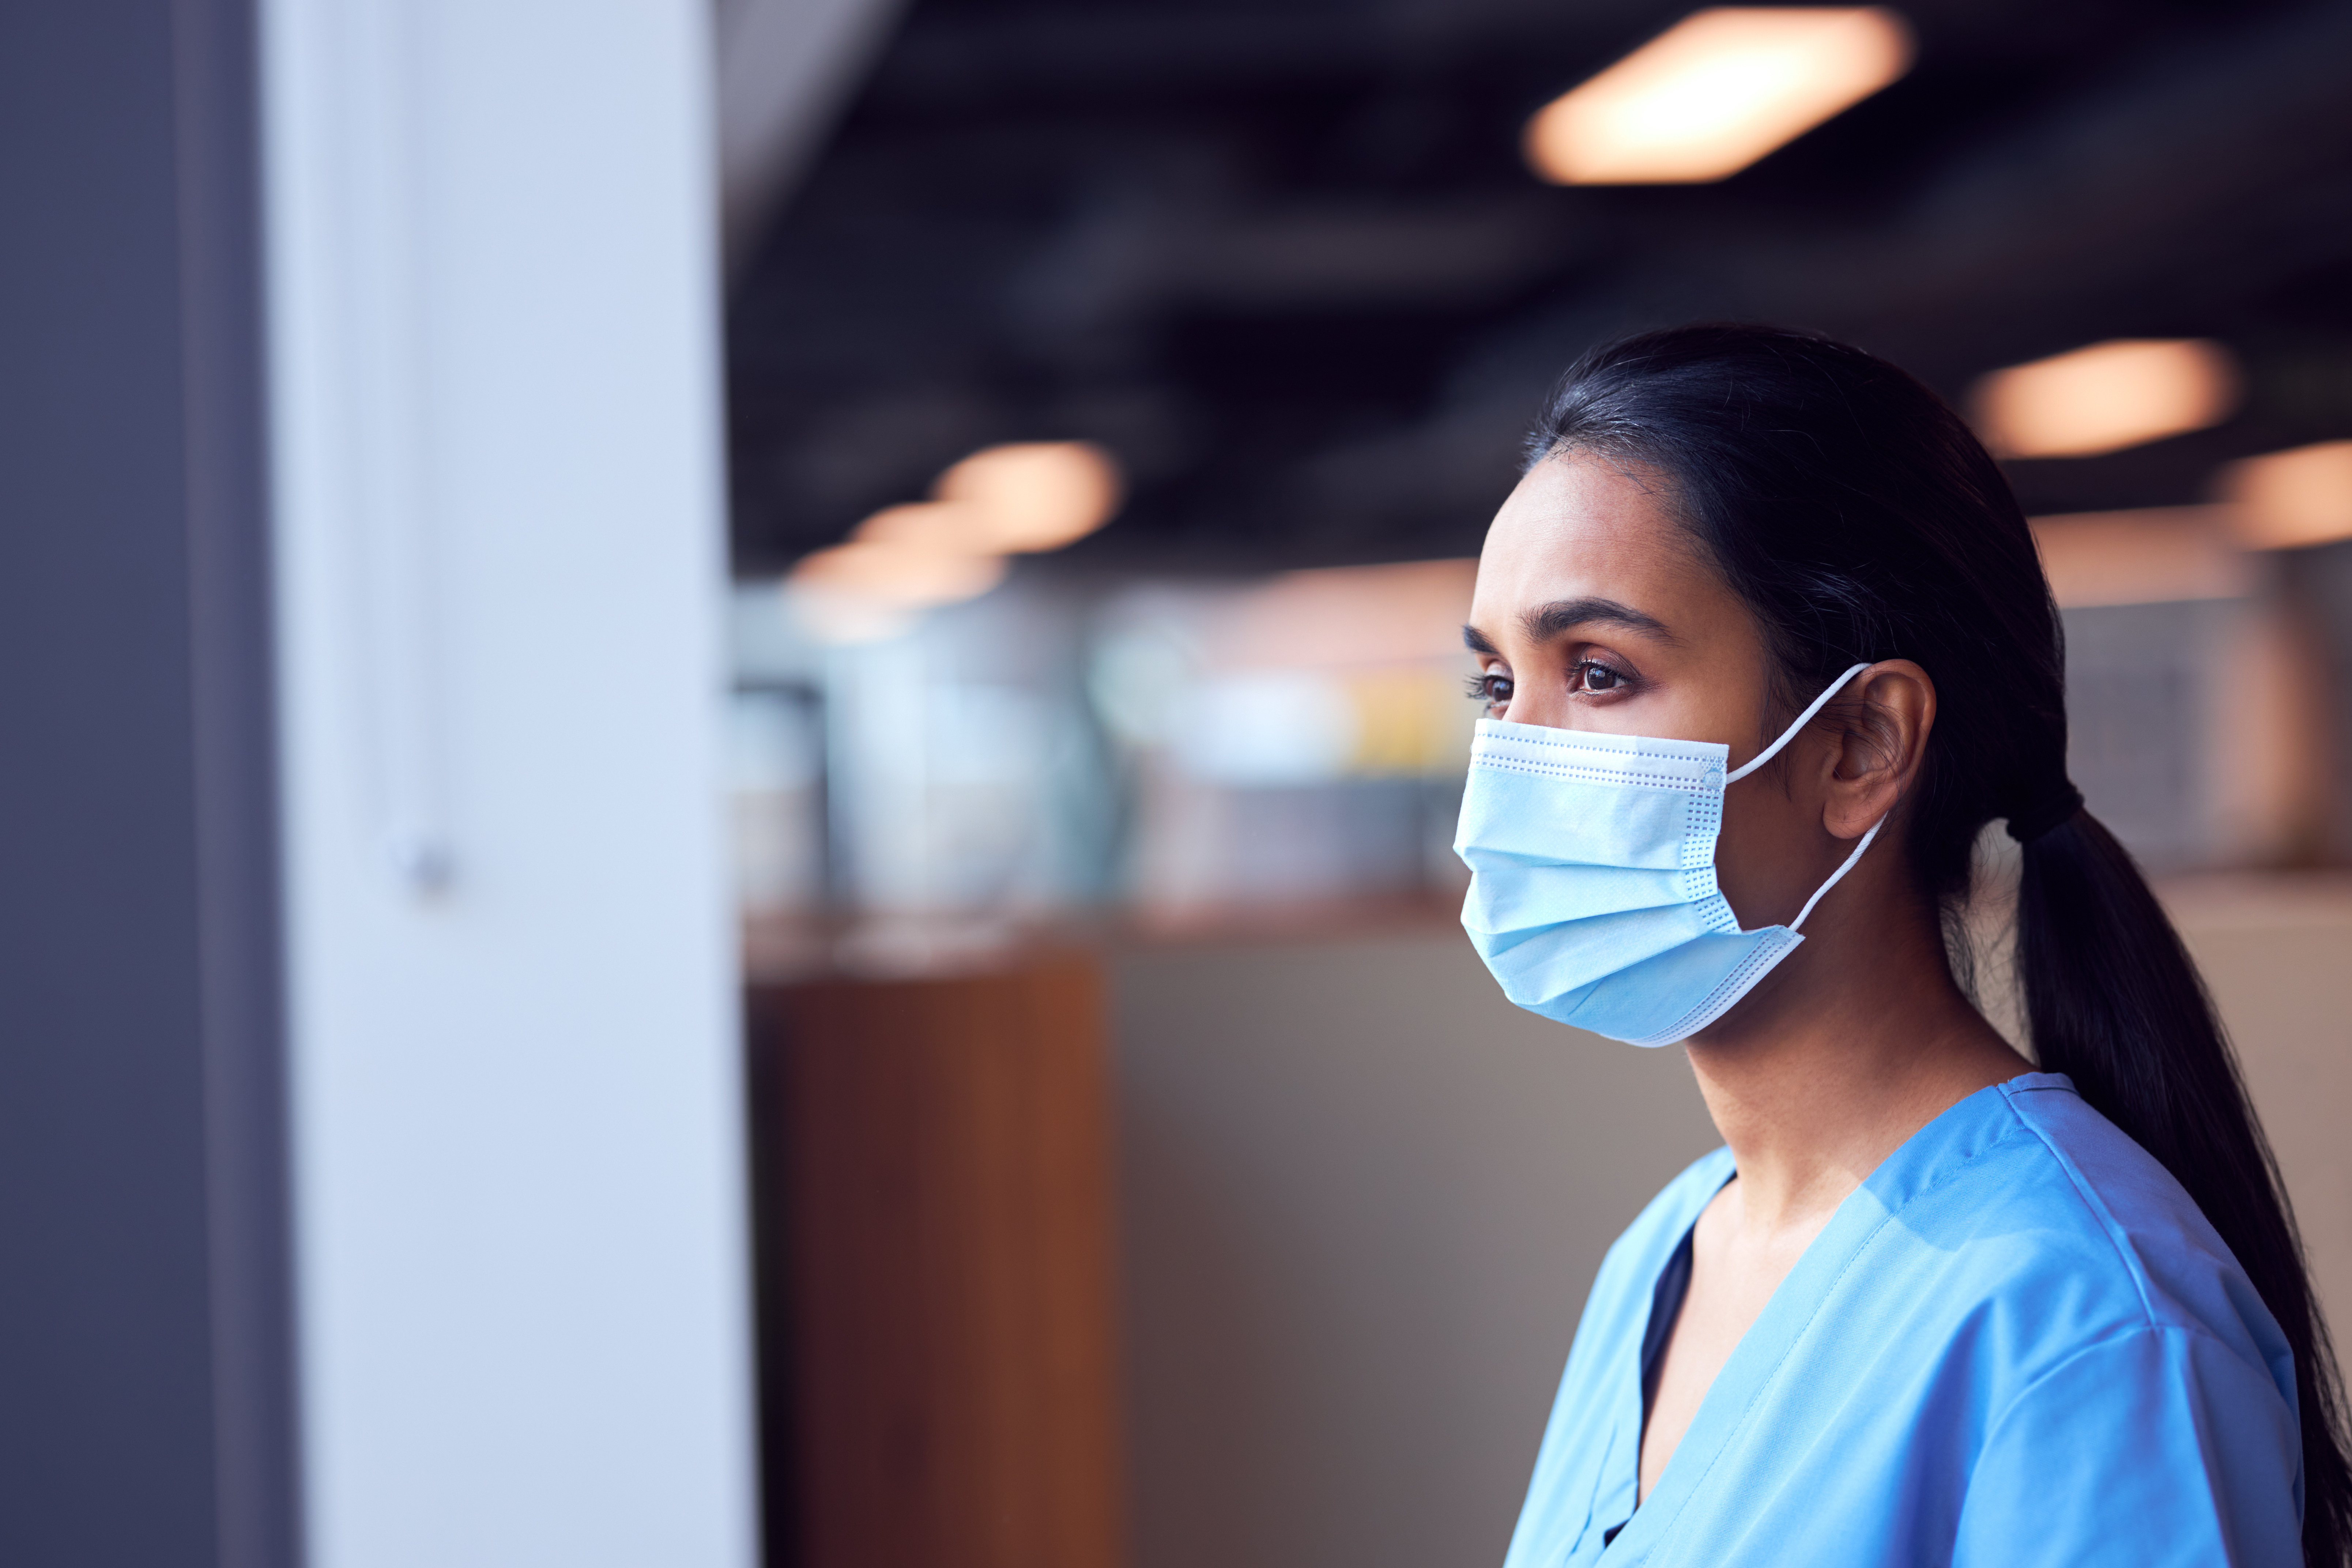 Pandemic-era burnout, short-staffing has more nurses eyeing the